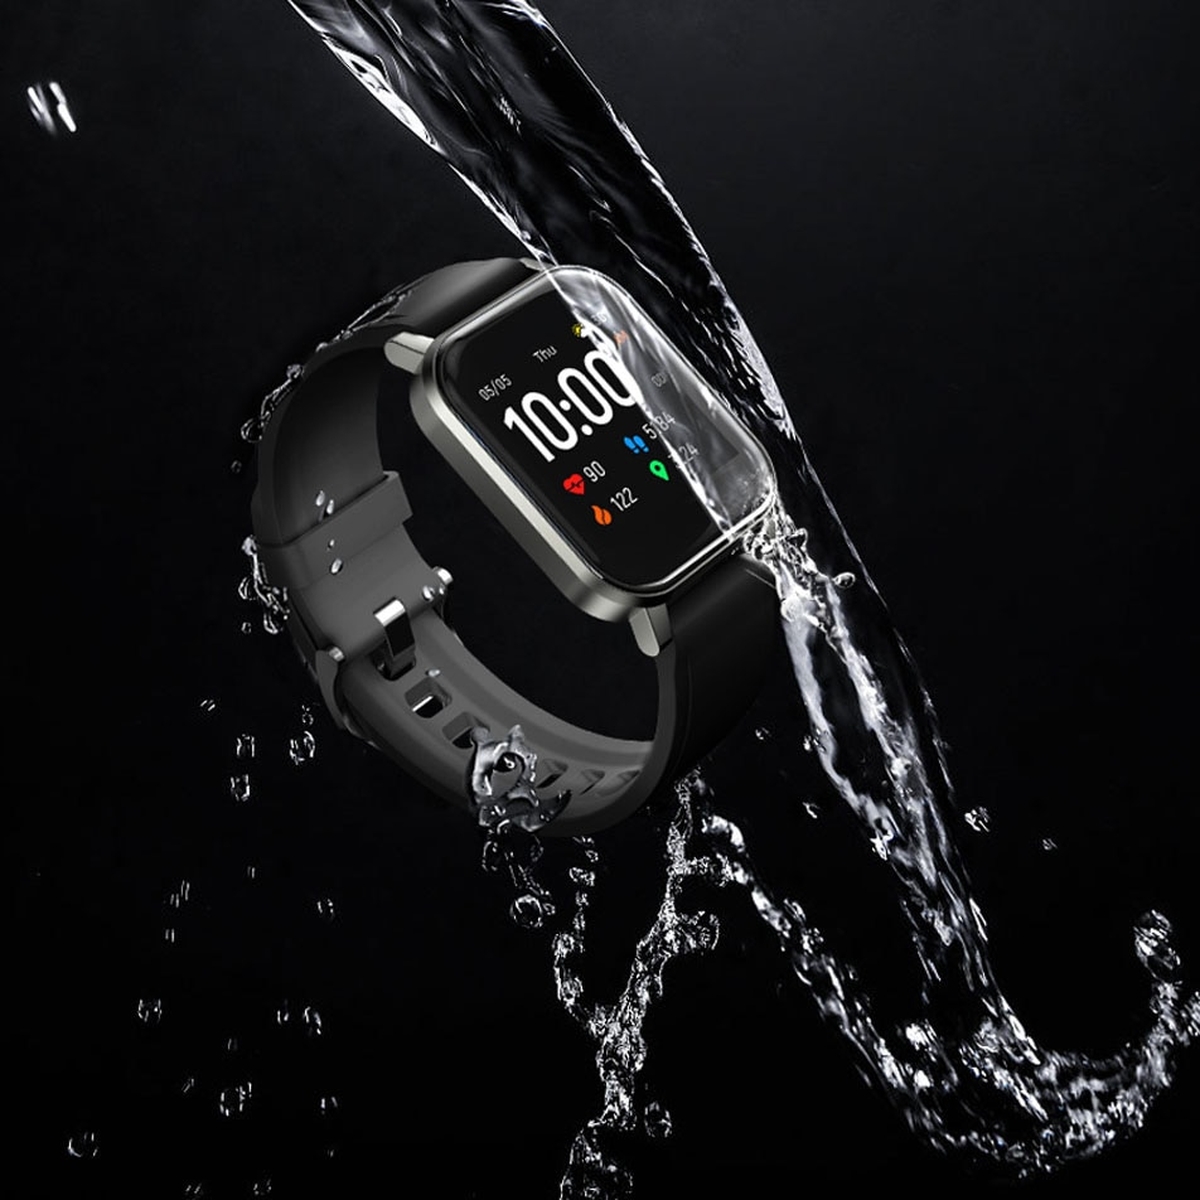 Relógio Haylou: vale a pena investir em smartwatches da marca